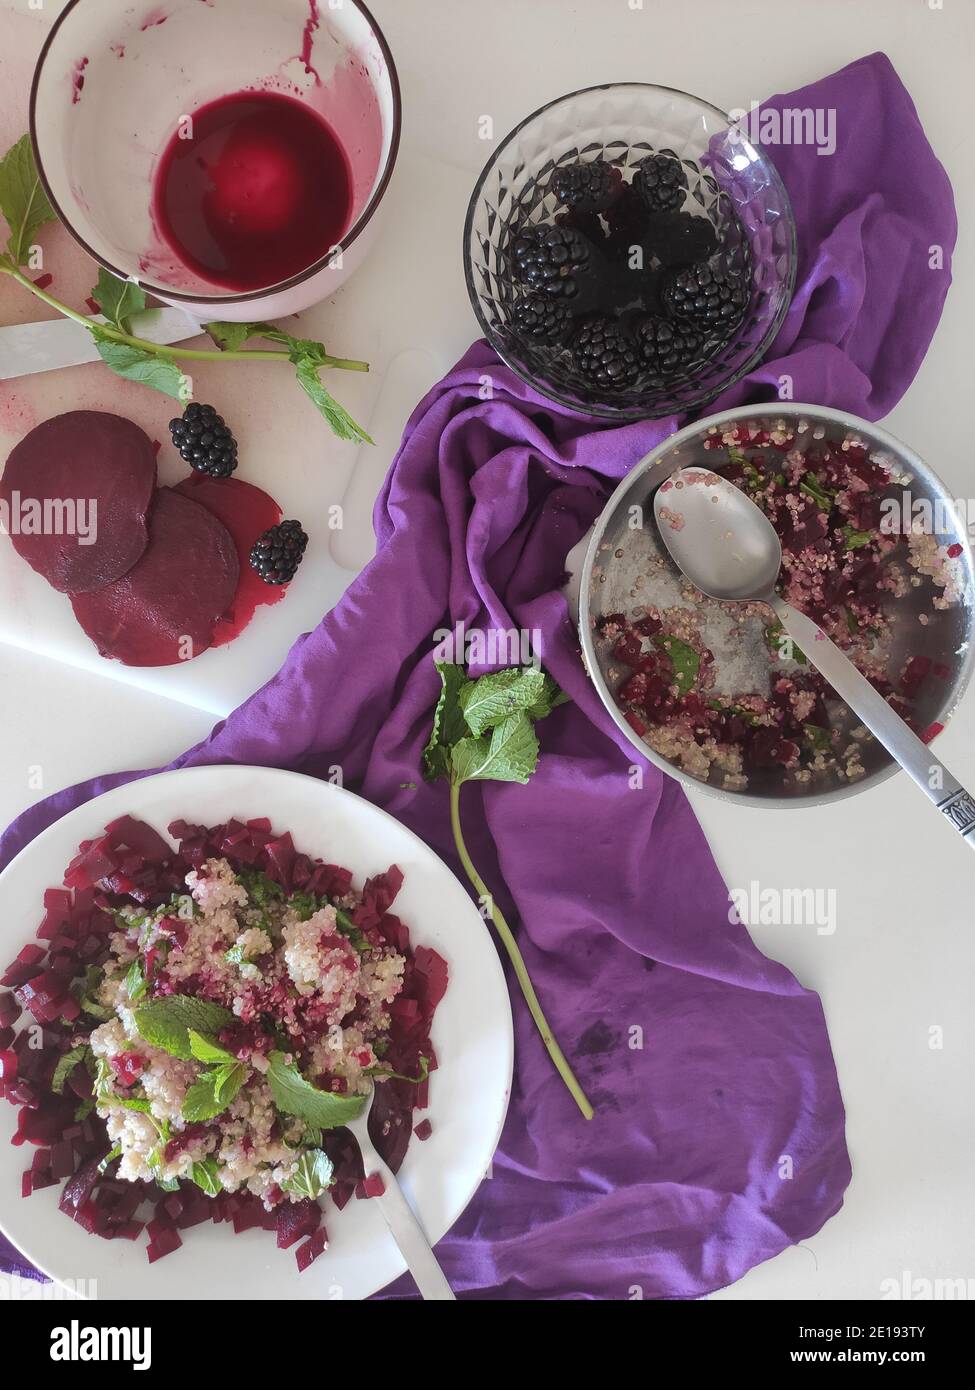 Original purple quinoa salad Stock Photo